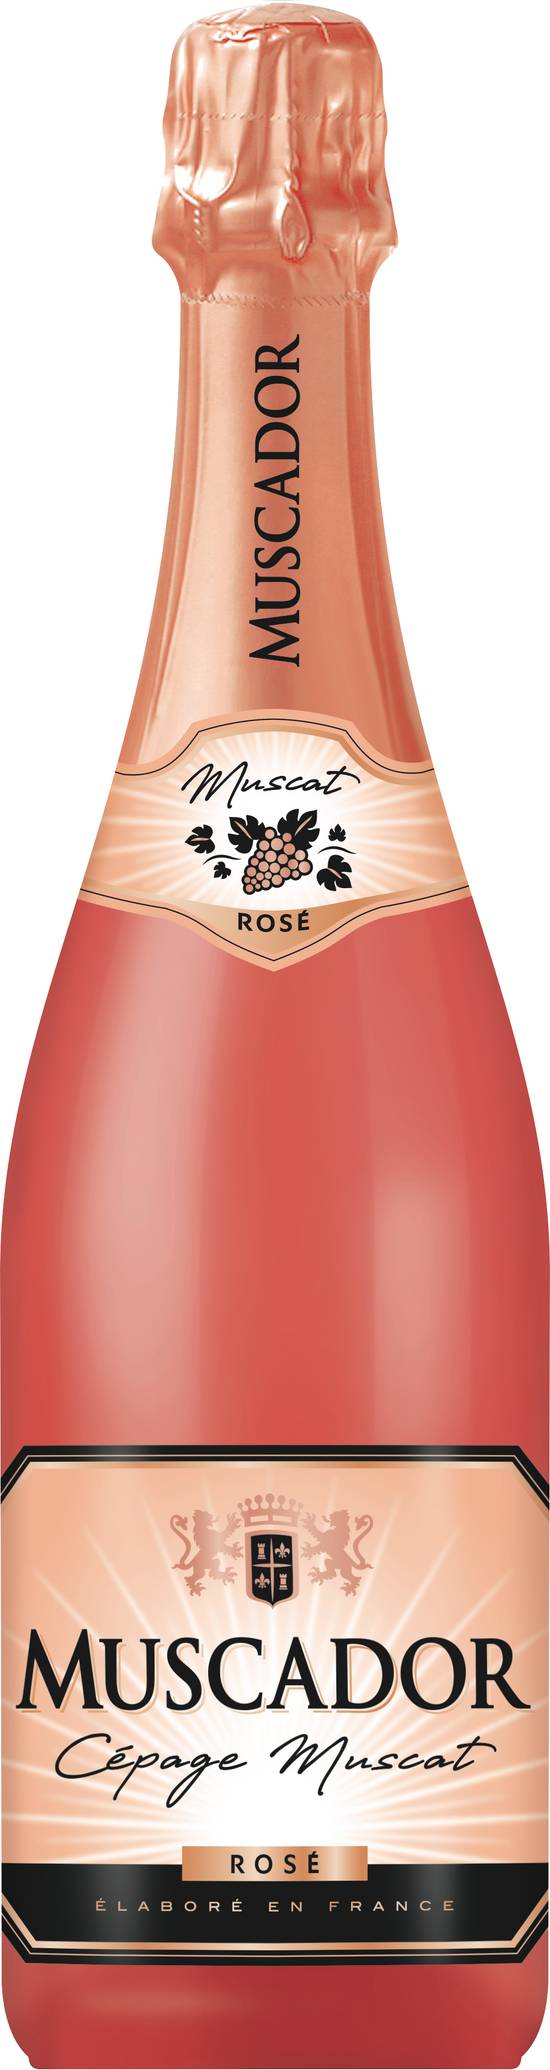 Muscador - Cépage muscat vin pétillant rosé (750 ml)